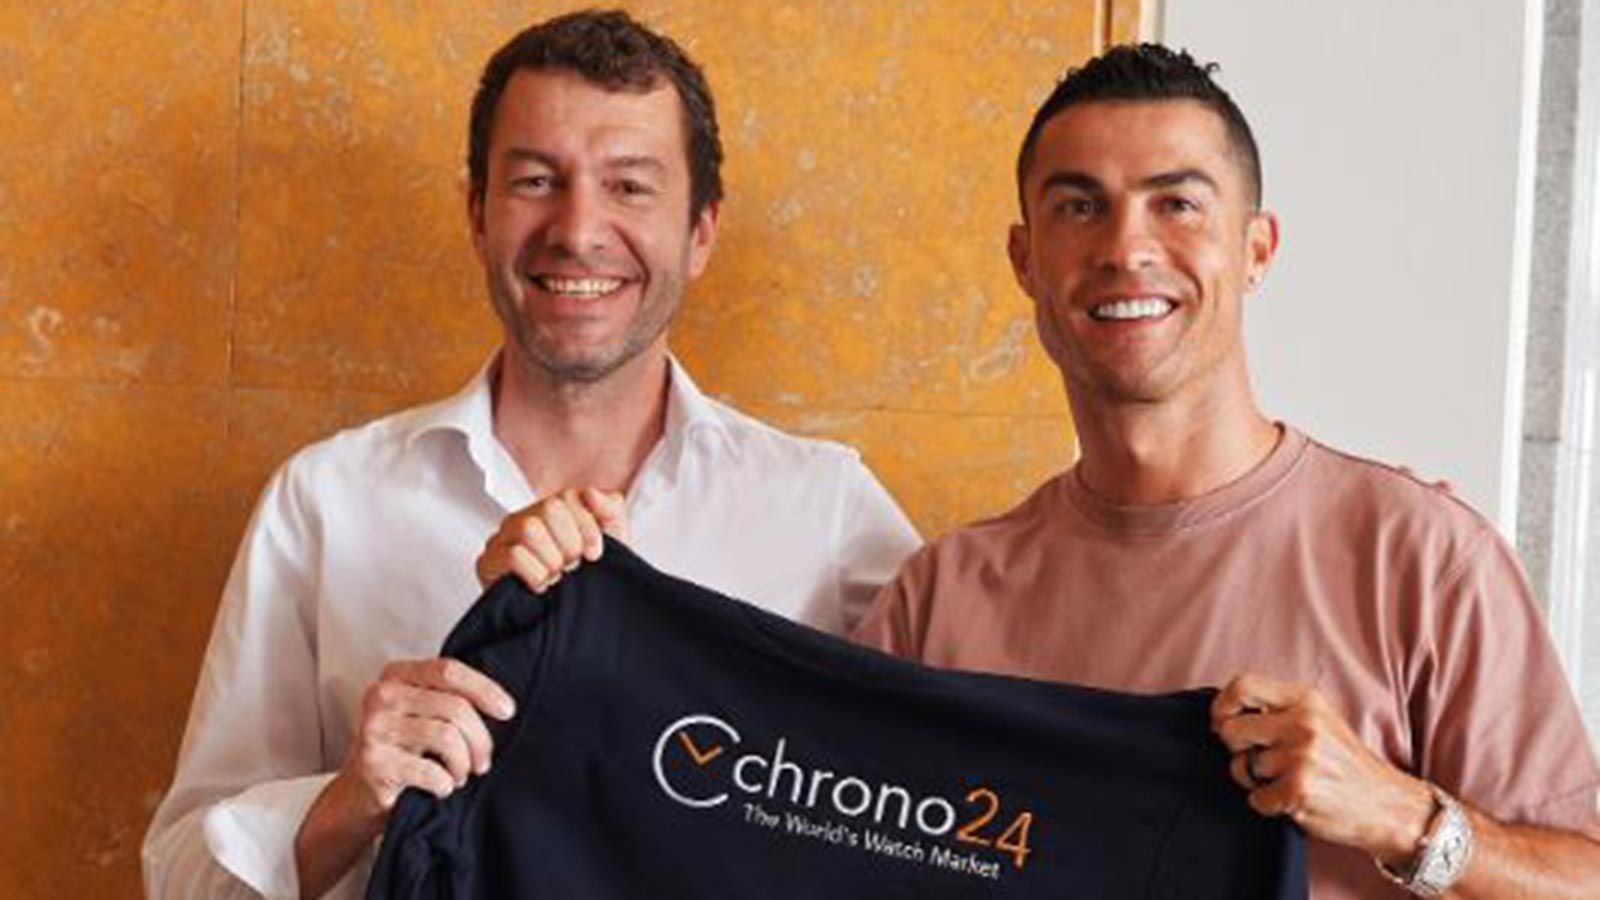 
                <strong>Investor in Luxusuhren</strong><br>
                Cristiano Ronaldo hat in ein Karlsruher Online-Portal für Luxusuhren investiert. Wie hoch die Summe ist, wurde nicht bekanntgegeben – das "Manager Magazin" zitiert einen Sprecher des Unternehmens: "Bei dem Betrag handelt es sich um eine signifikante Summe – sowohl für Cristiano Ronaldo als auch für Chrono24." Der Portugiese hat ein Faible für Luxusuhren, im Mai hatte er von einer anderen Luxusmarke eine extra für ihn angefertigte Uhr geschenkt bekommen, auf der er jubelnd verewigt war.  
              